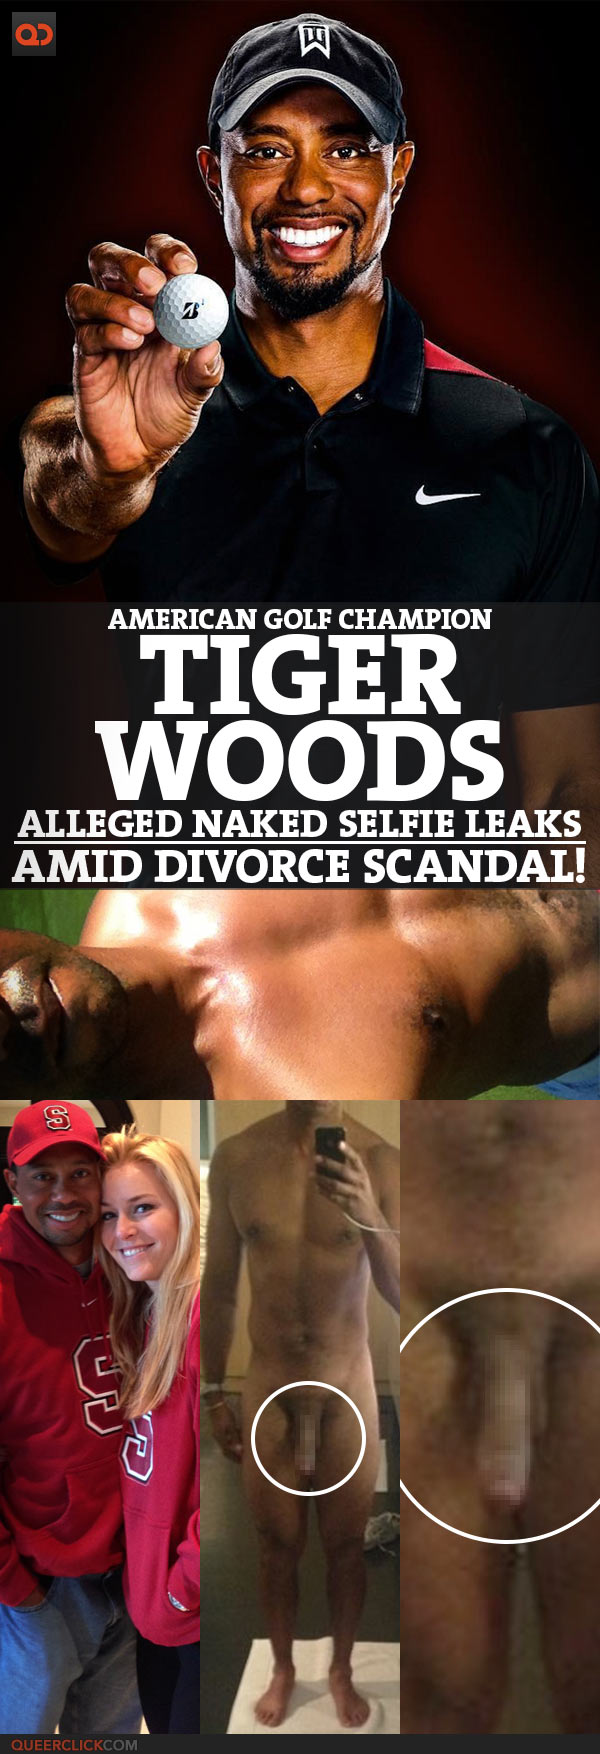 qc-tiger_woods_american_golf_champion_alleged_naked_selfie_leaks_divorce_scandal-teaser.jpg